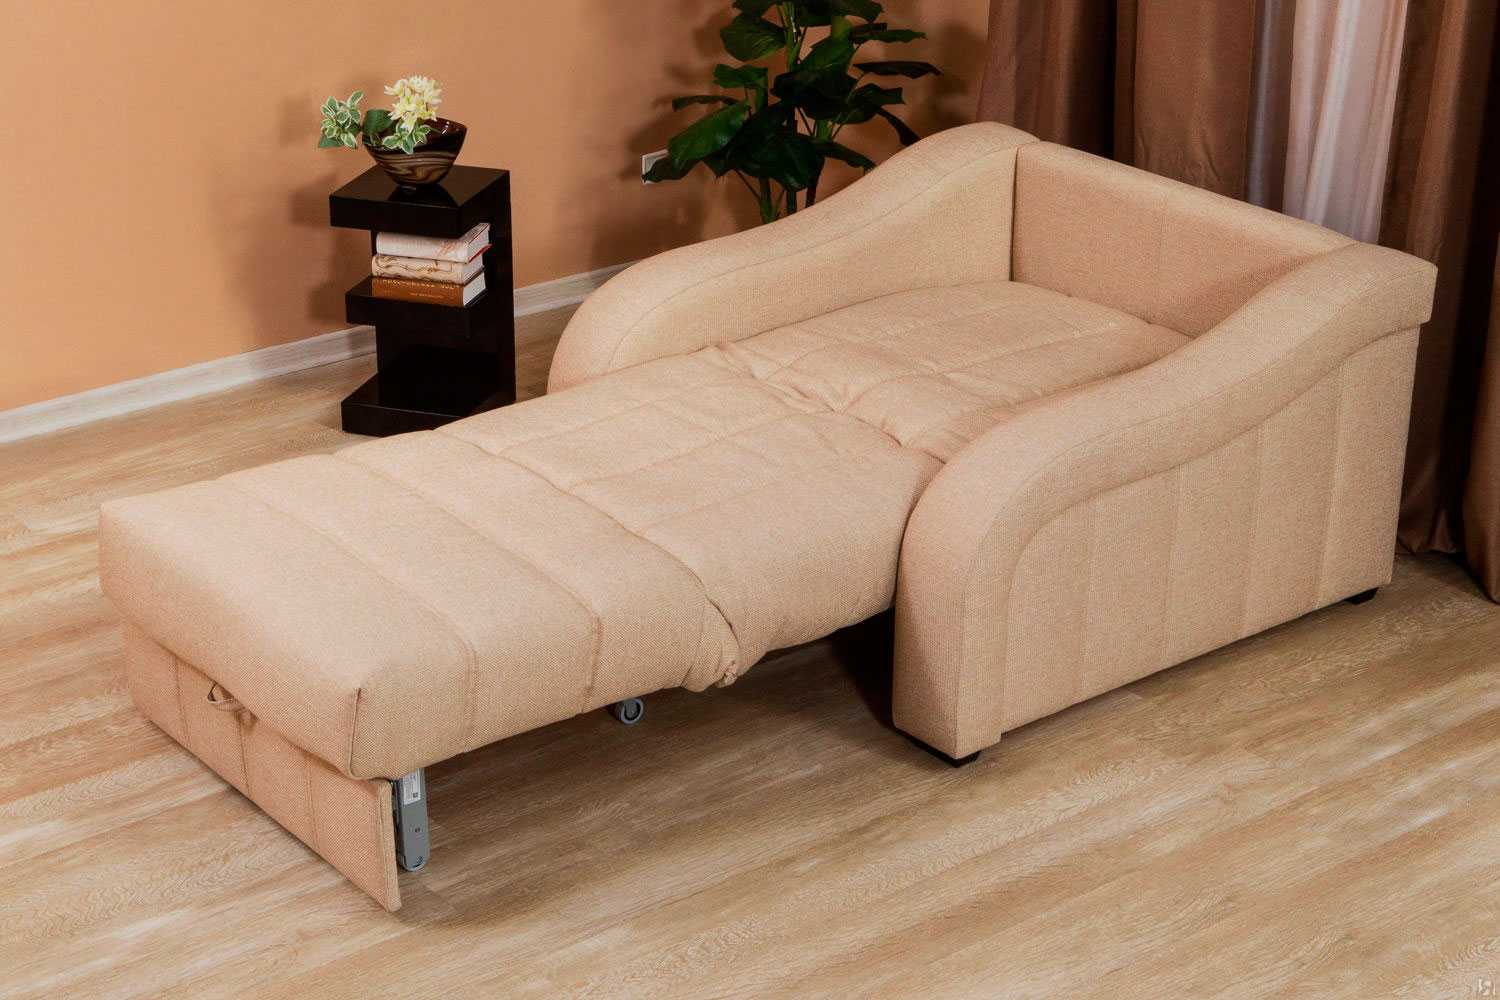 Установить кресло-кровать можно в любой точке комнаты